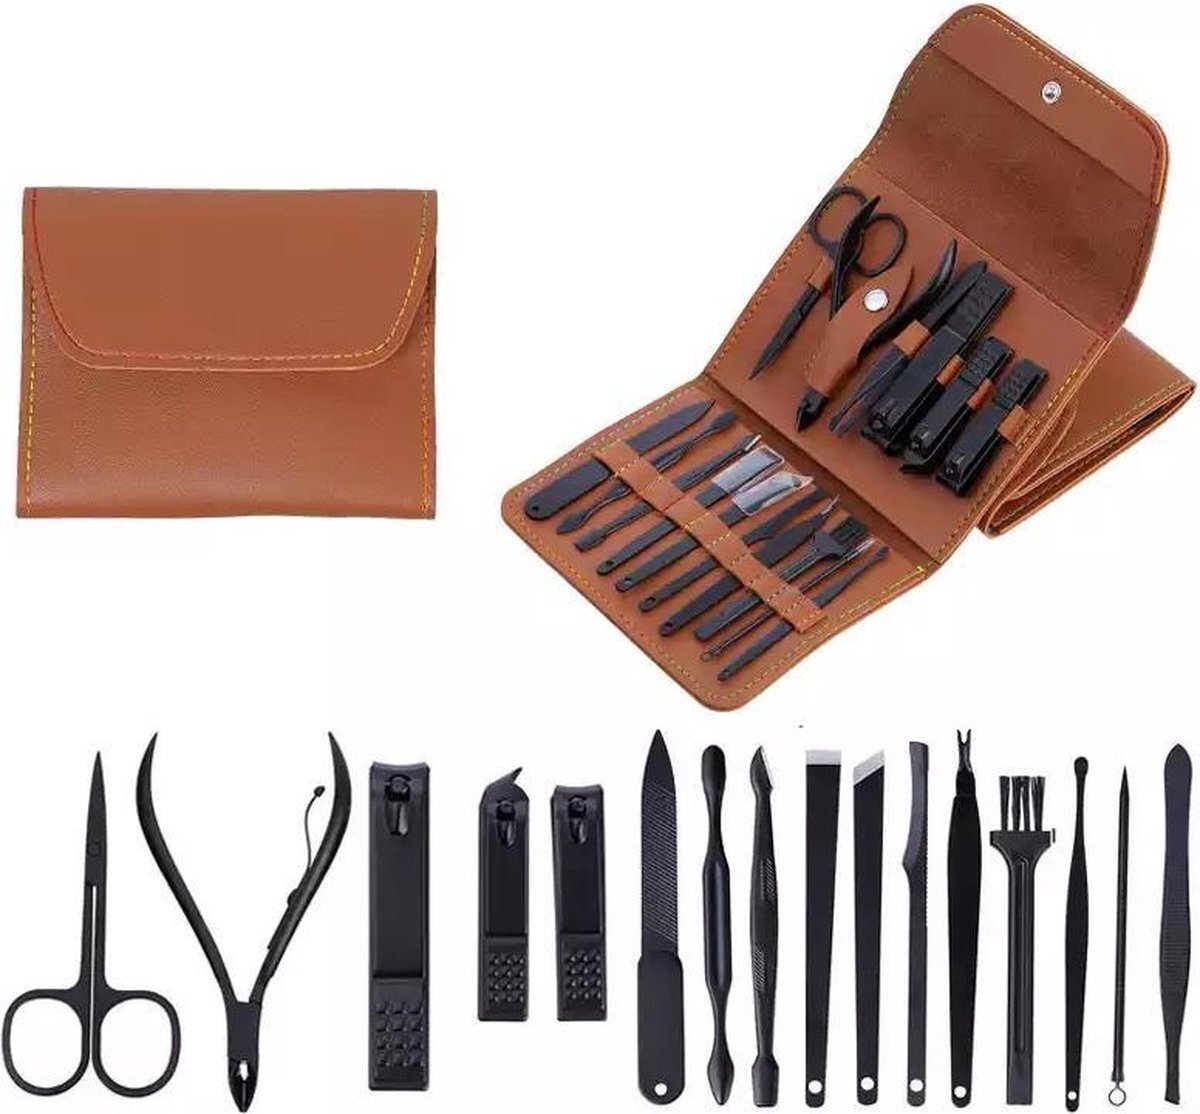 LOUZIR 16 Delig Manicure Set met Gezichtsmasker- Nagelset -Nagelvijl - Nagelknipper- Nagelschaar - Pincet- Manicureset met Luxe Etui voor Nagel